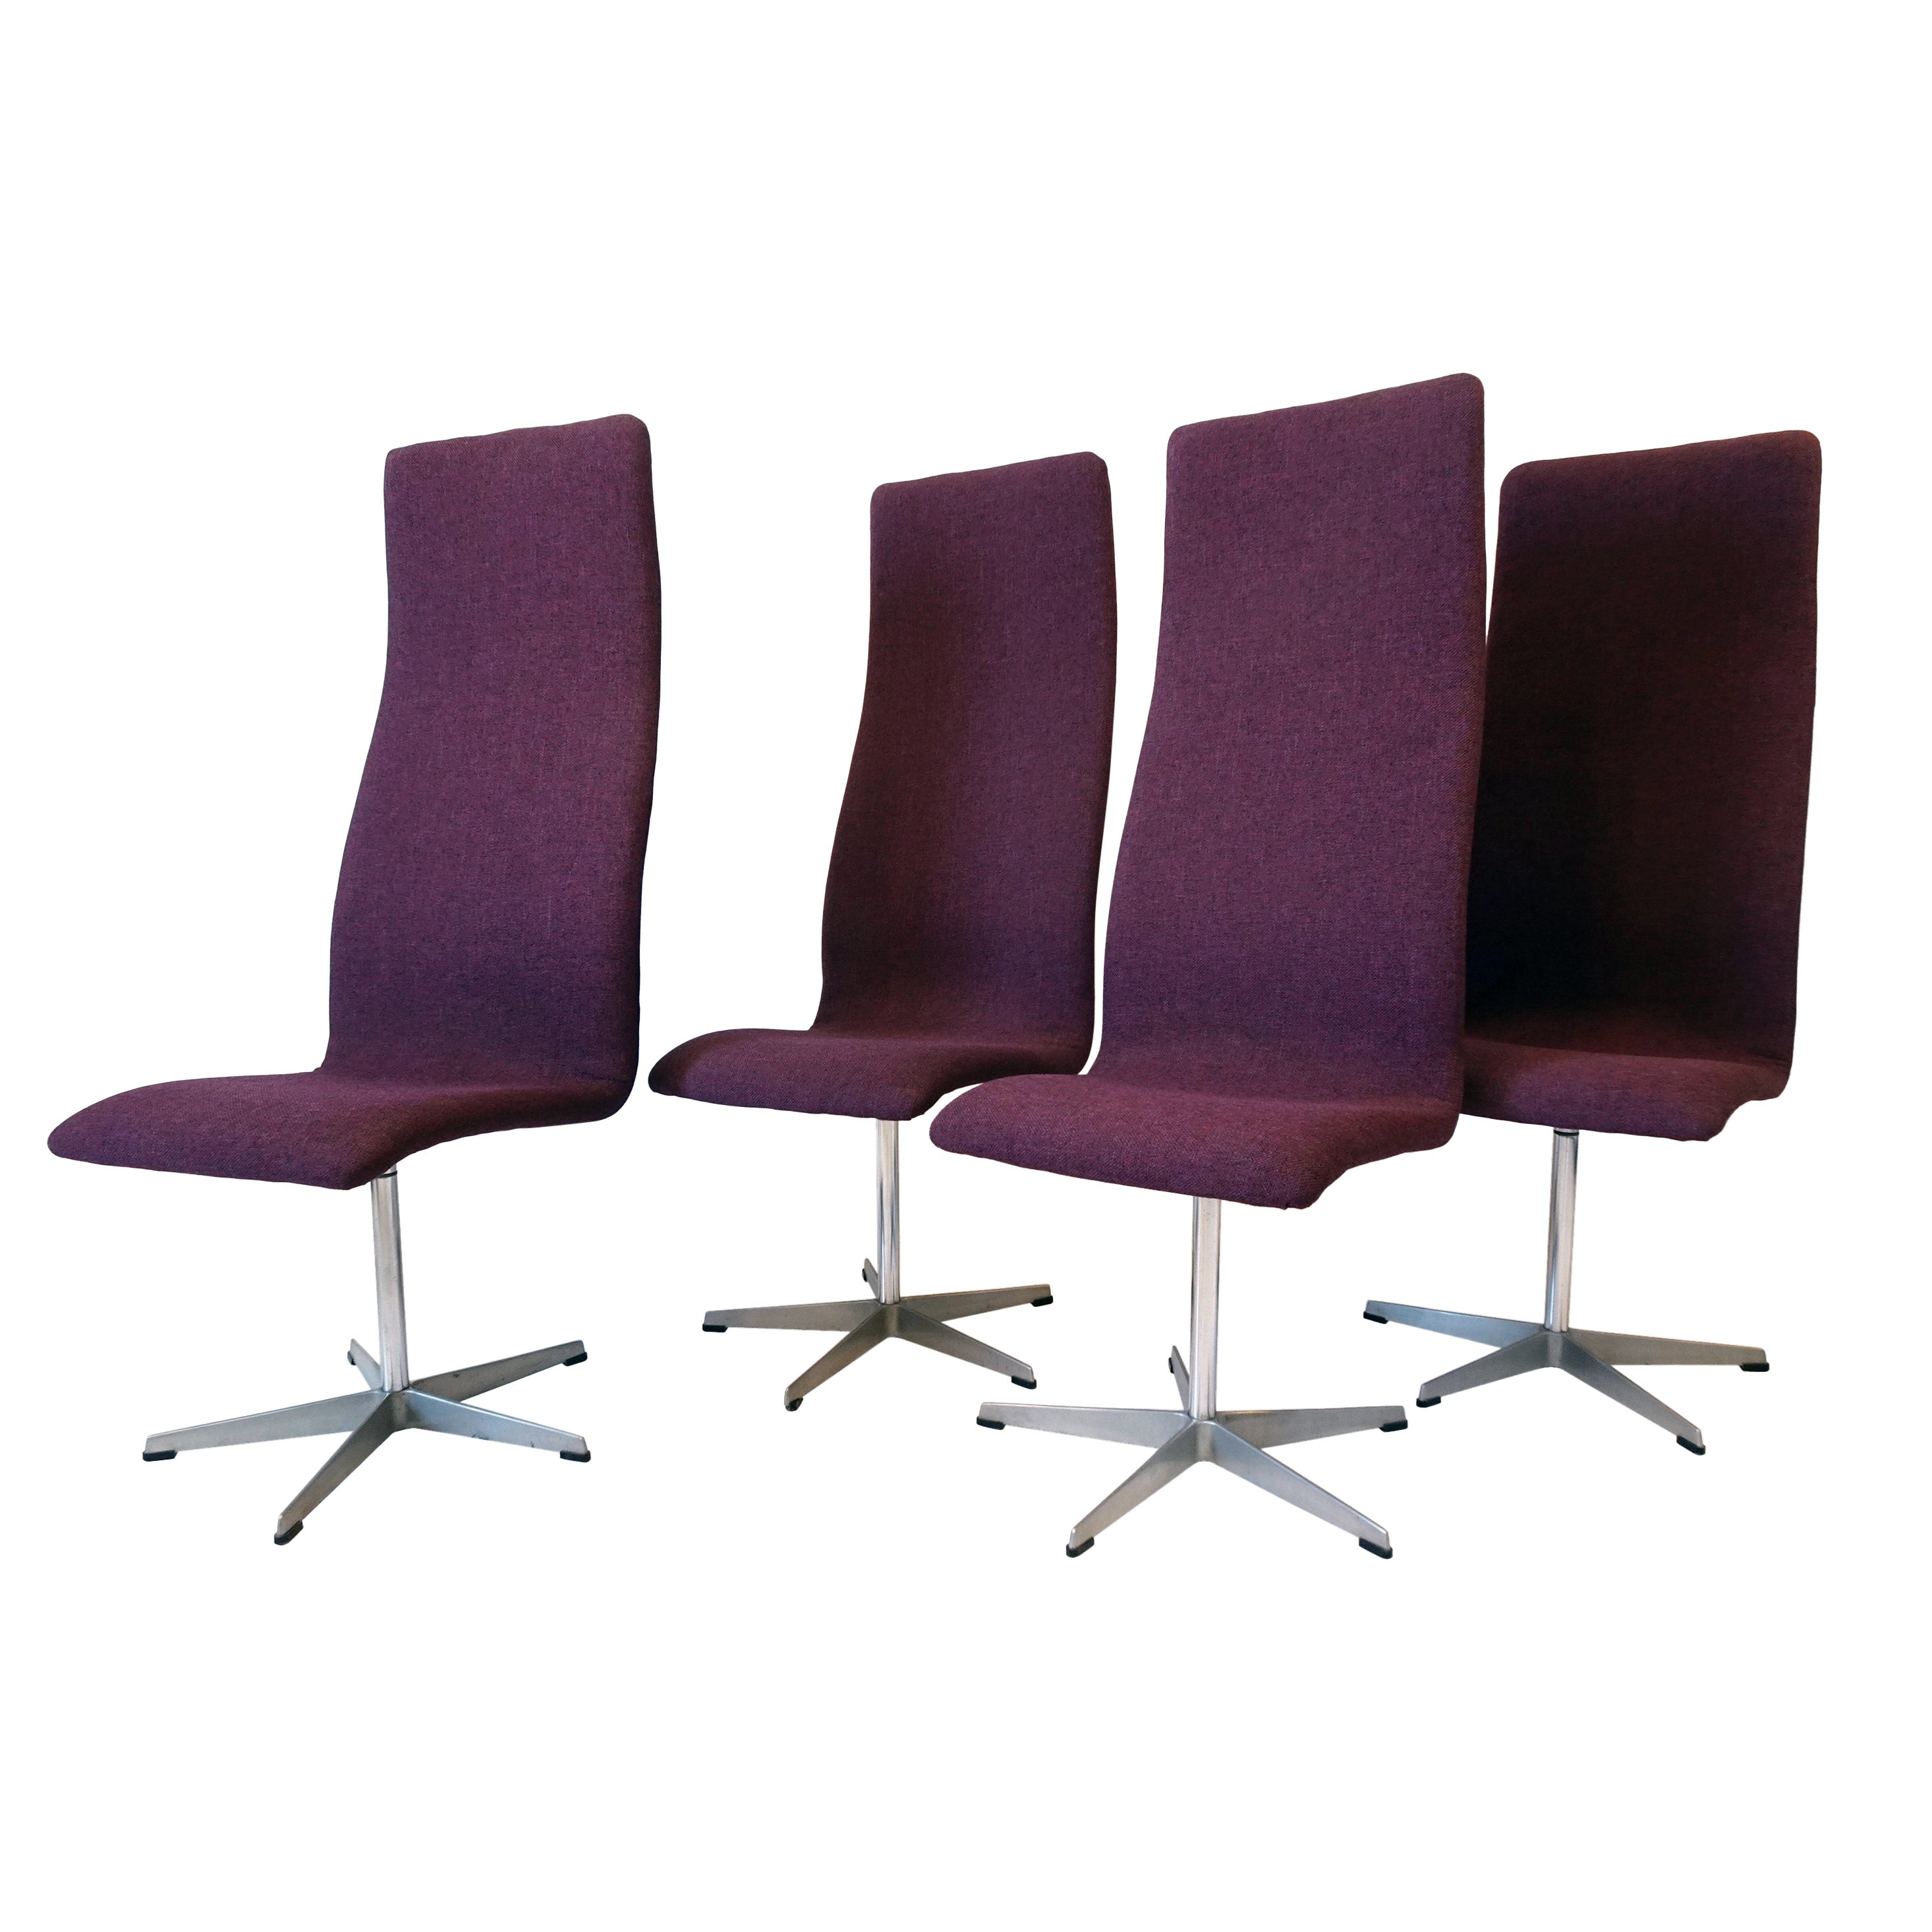 4 schwenkbare Oxford-Esszimmerstühle von Arne Jacobsen, Dänemark